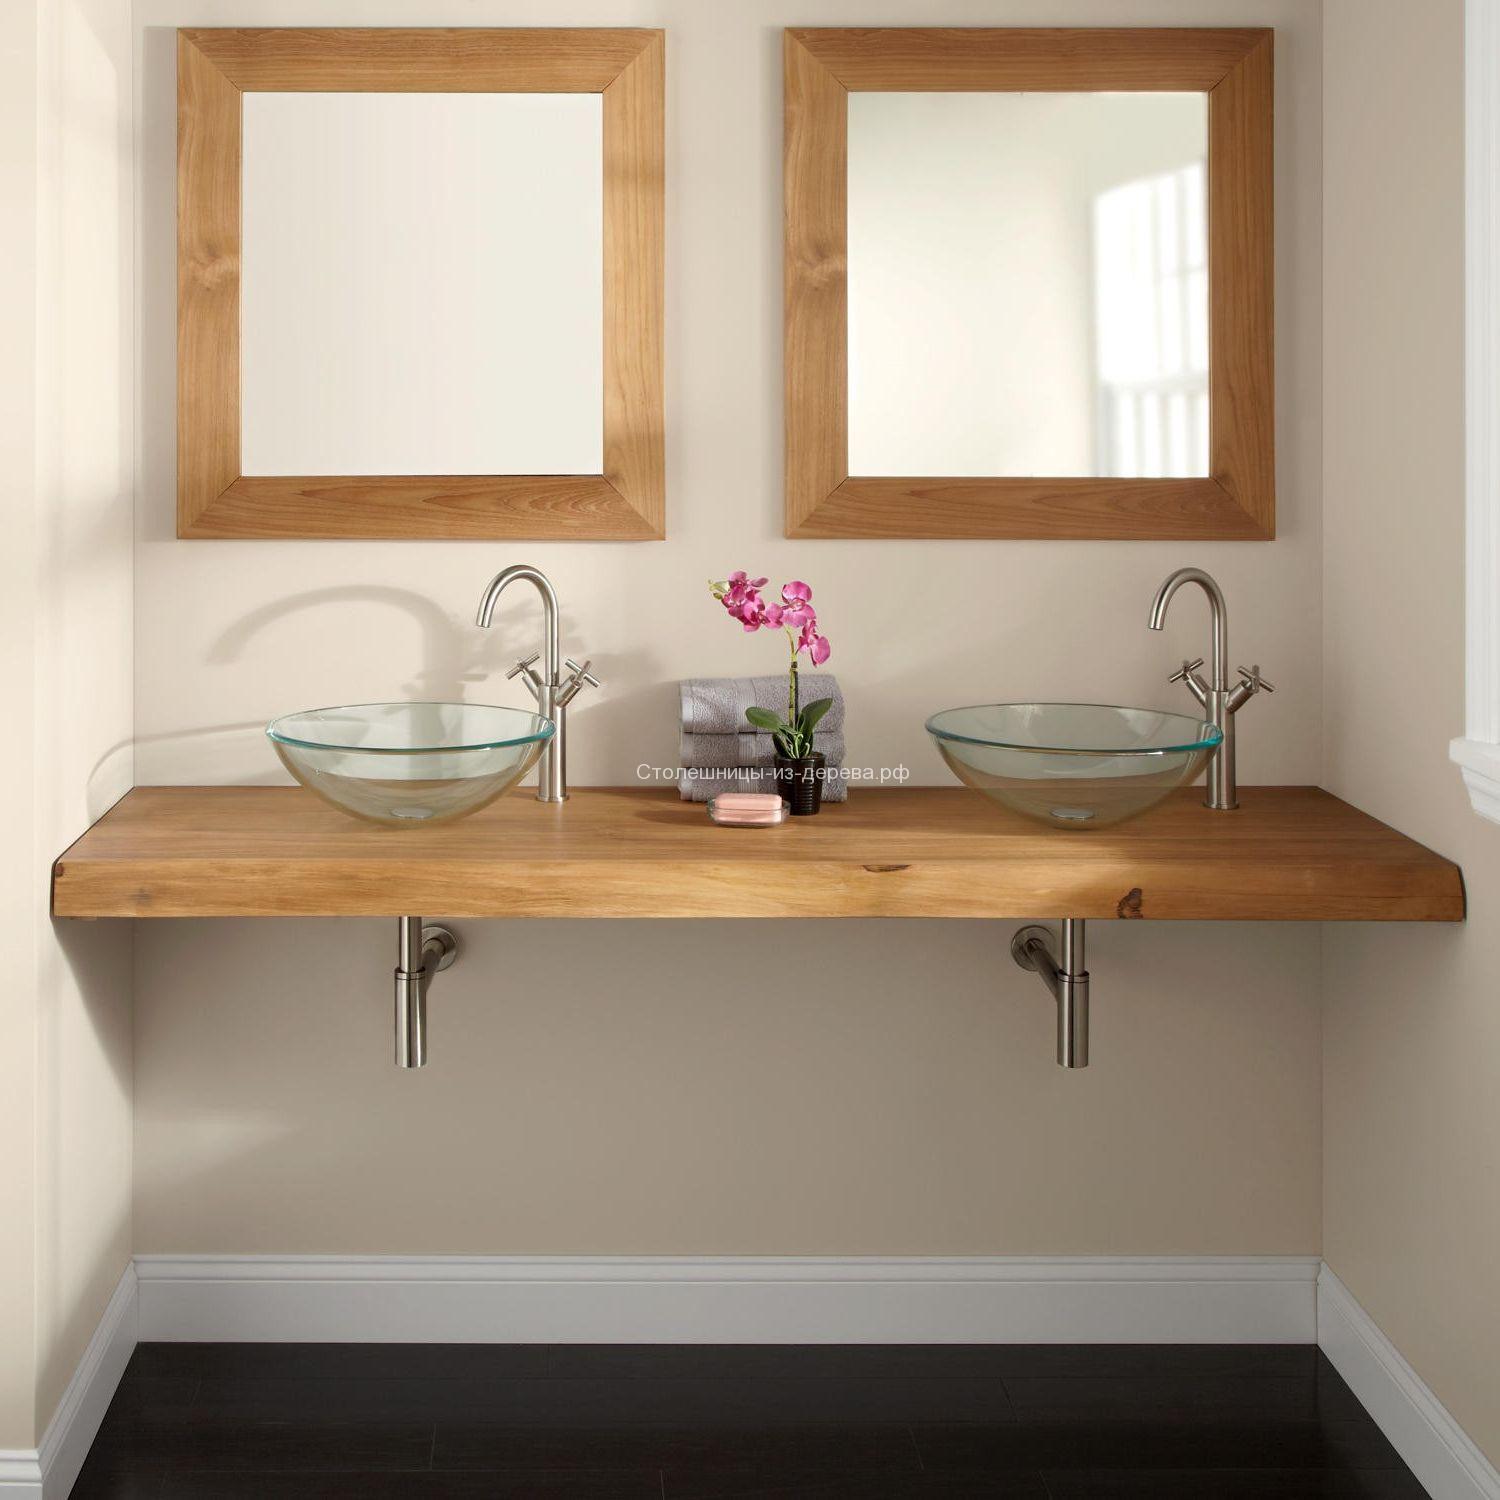 Столешница в ванную комнату под раковину: обзор популярных моделей из дерева, камня, гранита, виды, фото удачных вариантов дизайна